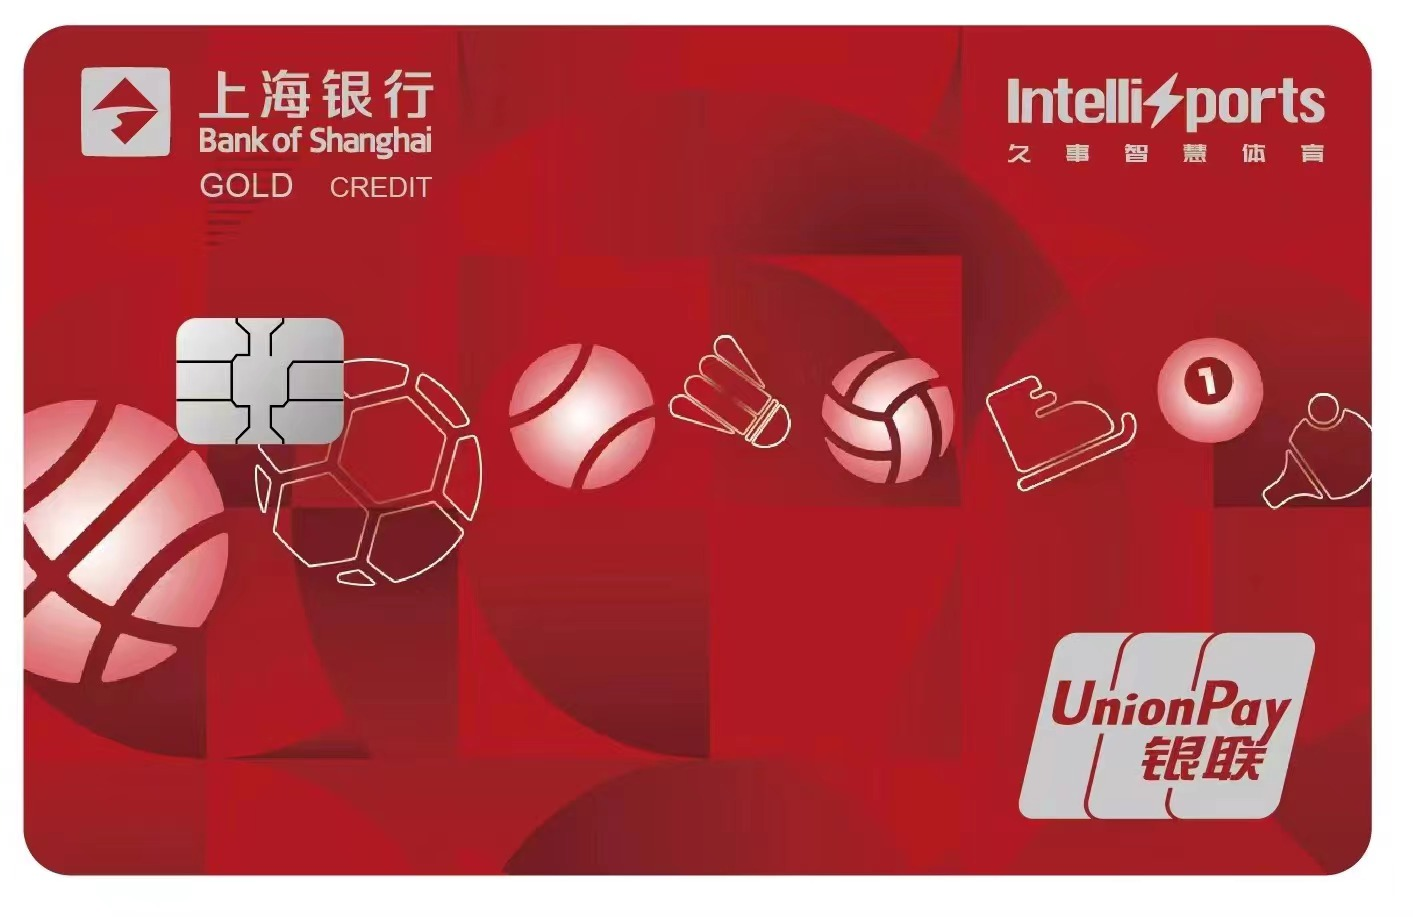 智慧体育 惠享生活——上海银行久事智慧体育联名信用卡预热